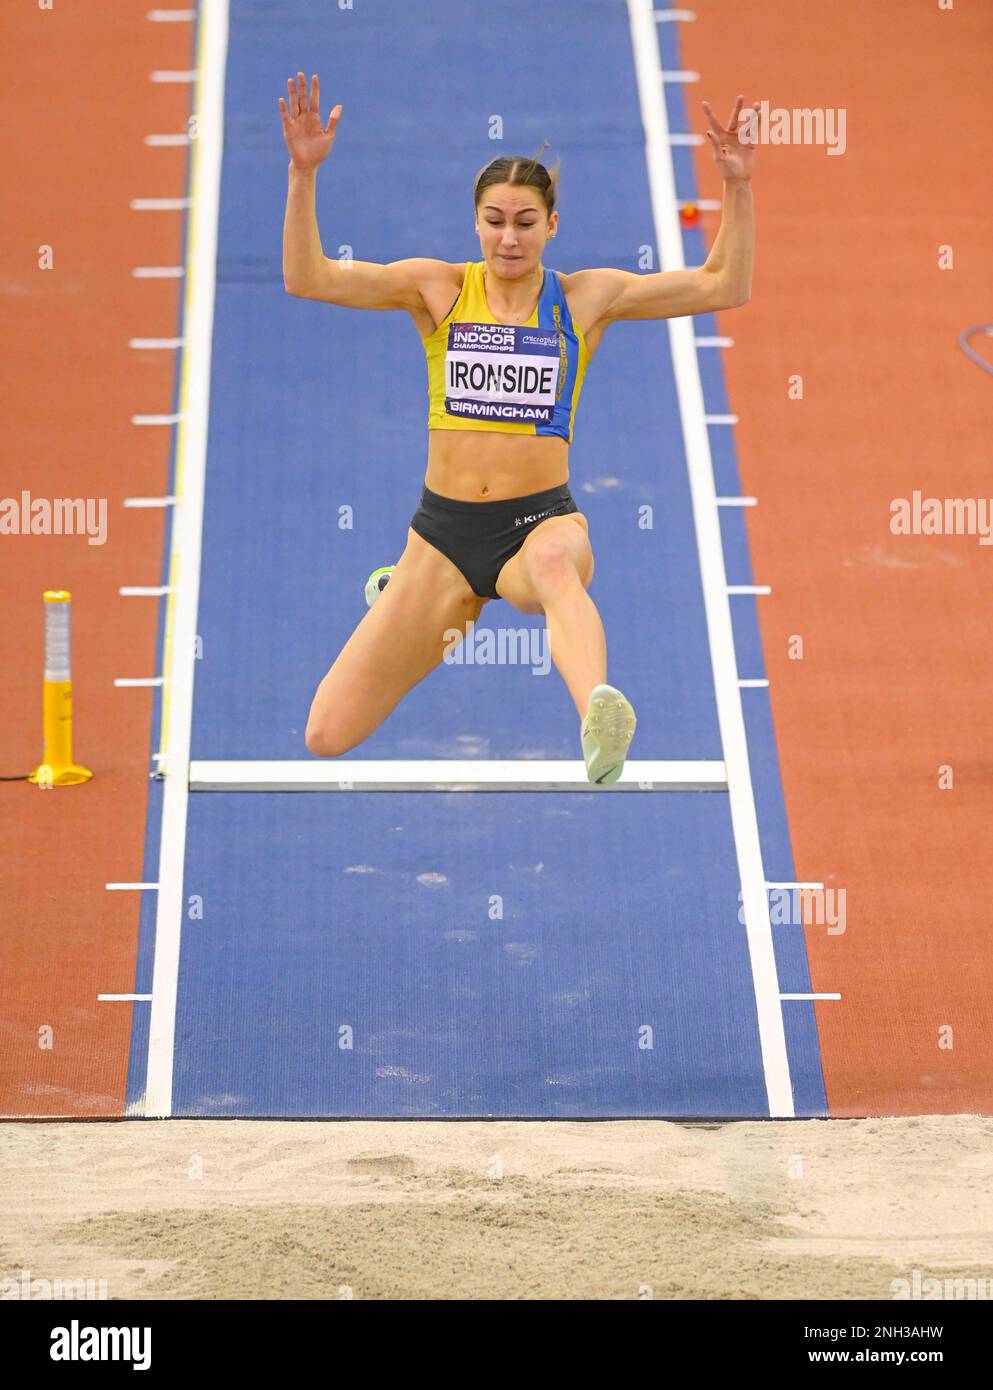 BIRMINGHAM, ANGLETERRE - FÉVRIER 19: Brooke IRONSIDE pendant le long saut au Royaume-Uni Athletics Indoor Championships jour 2 à l'Utilita Arena, Birmingham, Angleterre Banque D'Images